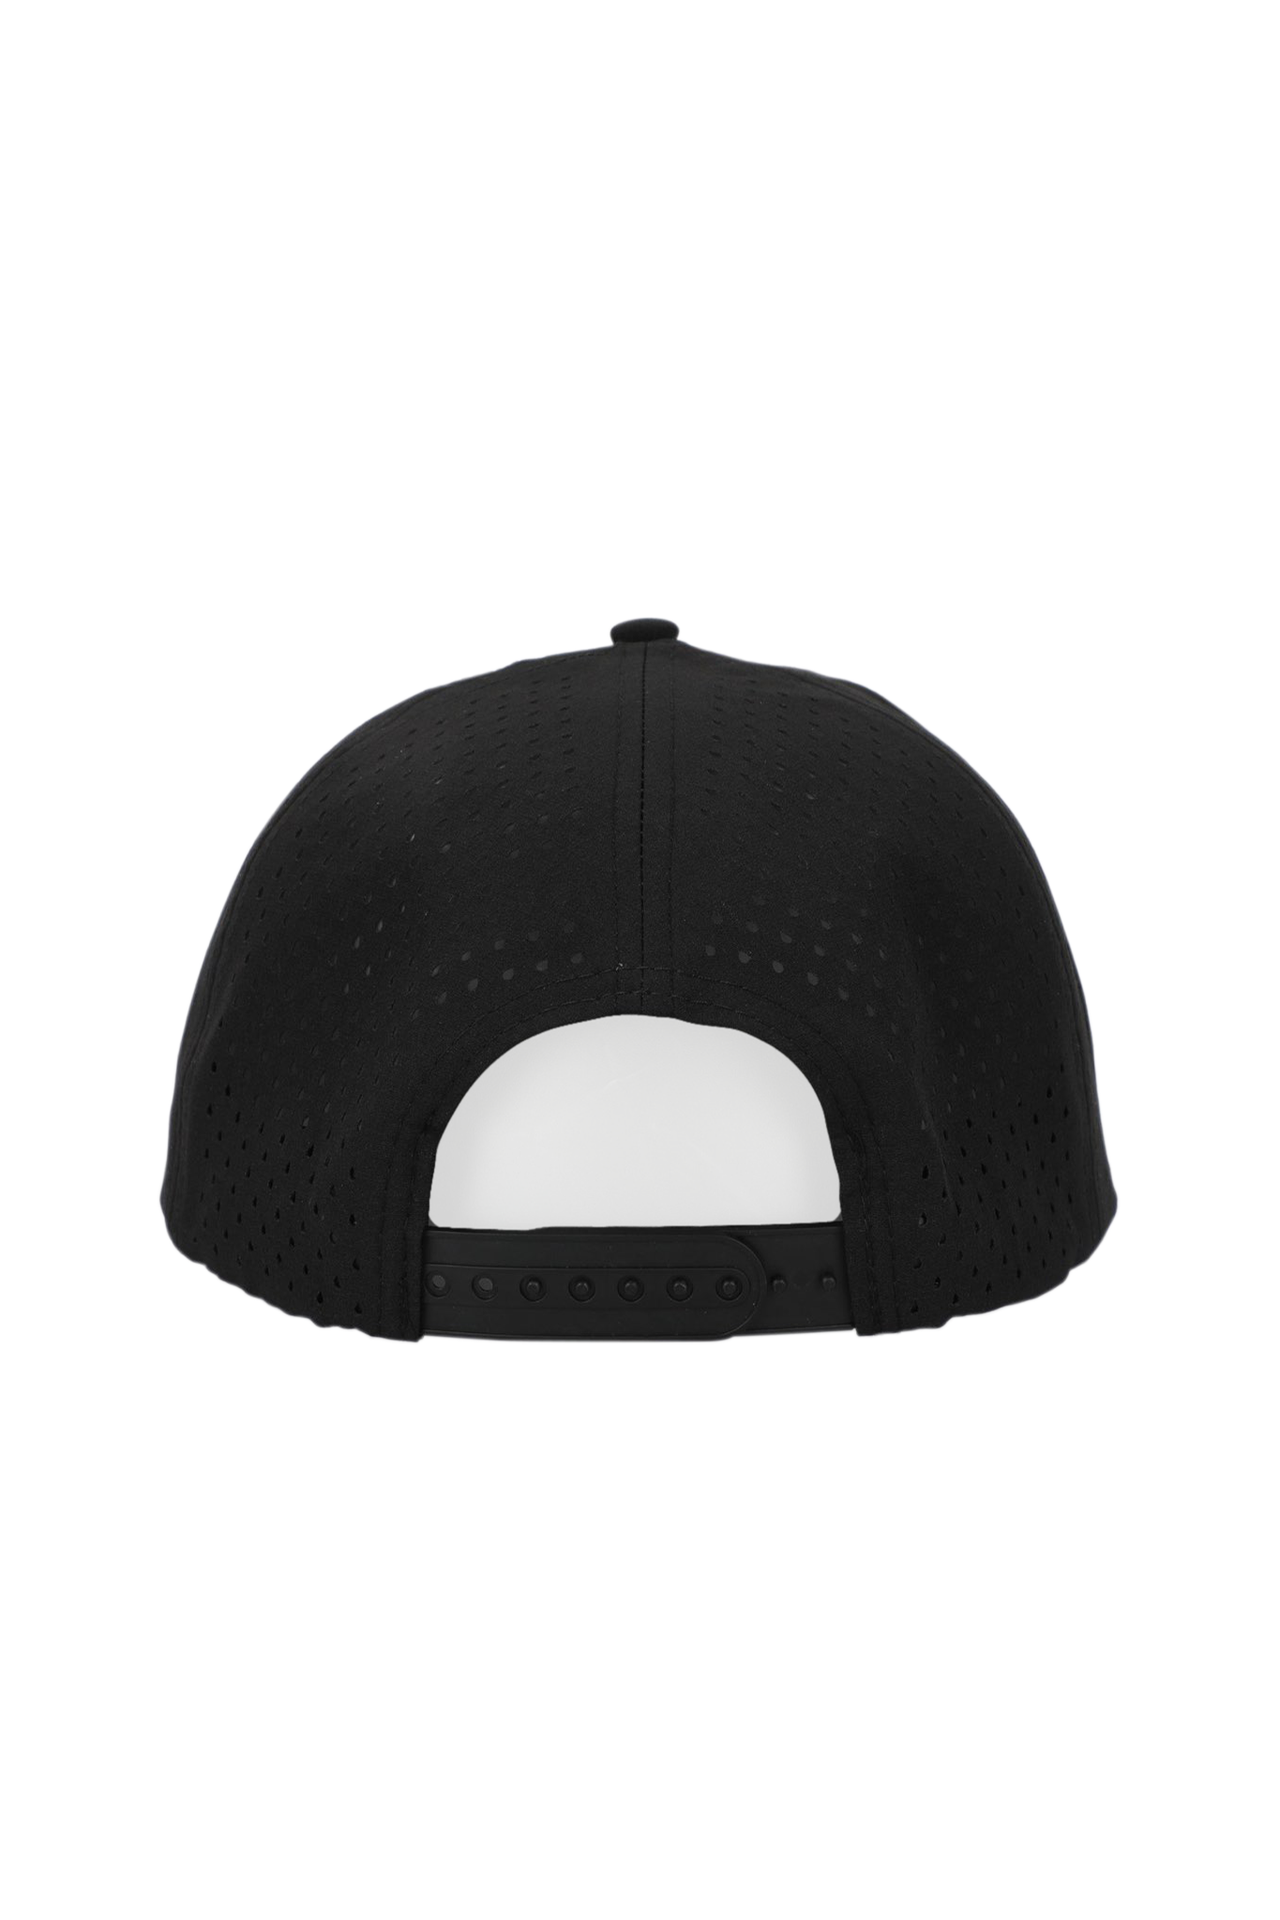 Waterproof Bosky Snapback Hat - Black